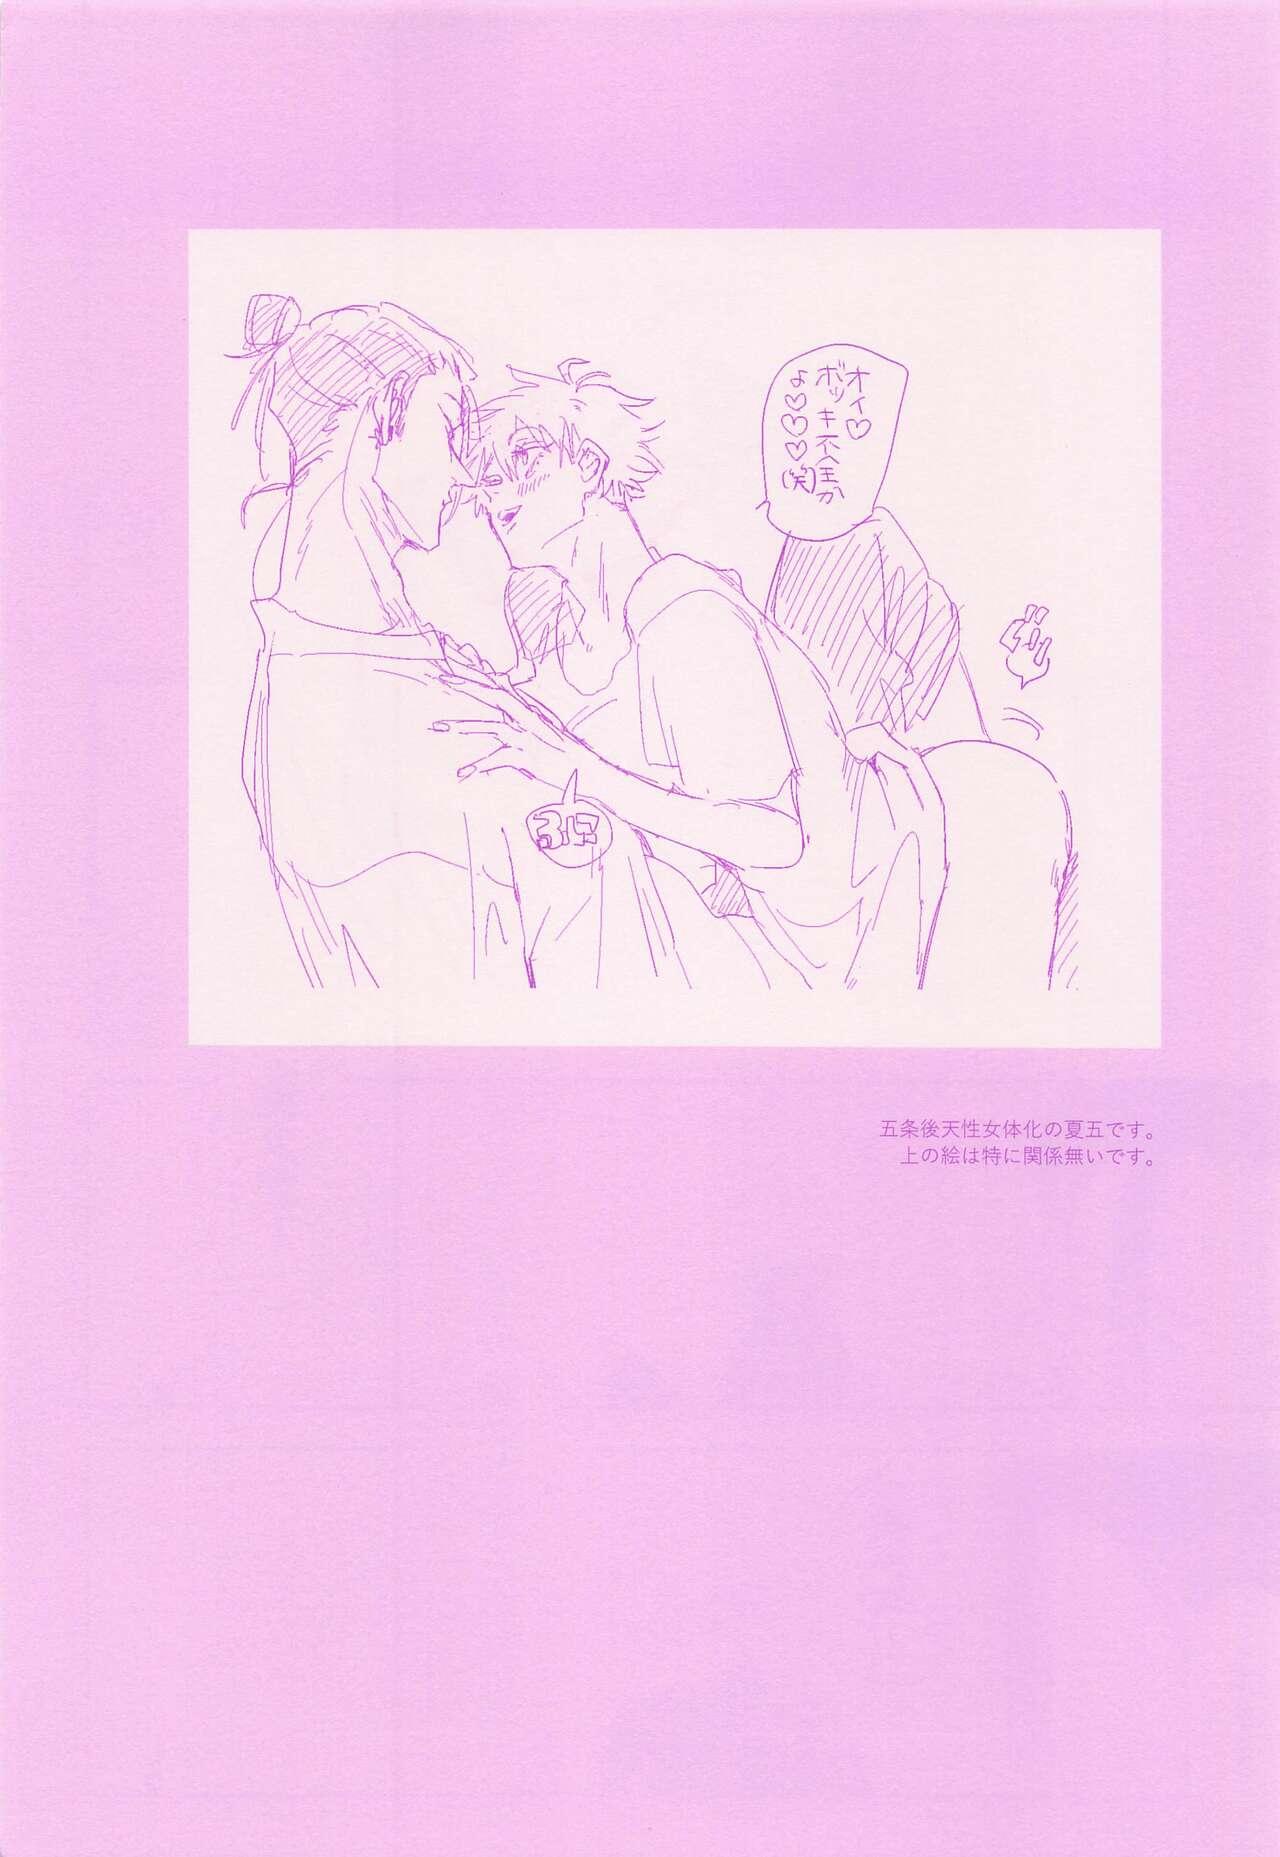 Hardcore Free Porn hadaihizuba／who are yo？ - Jujutsu kaisen Teasing - Page 4